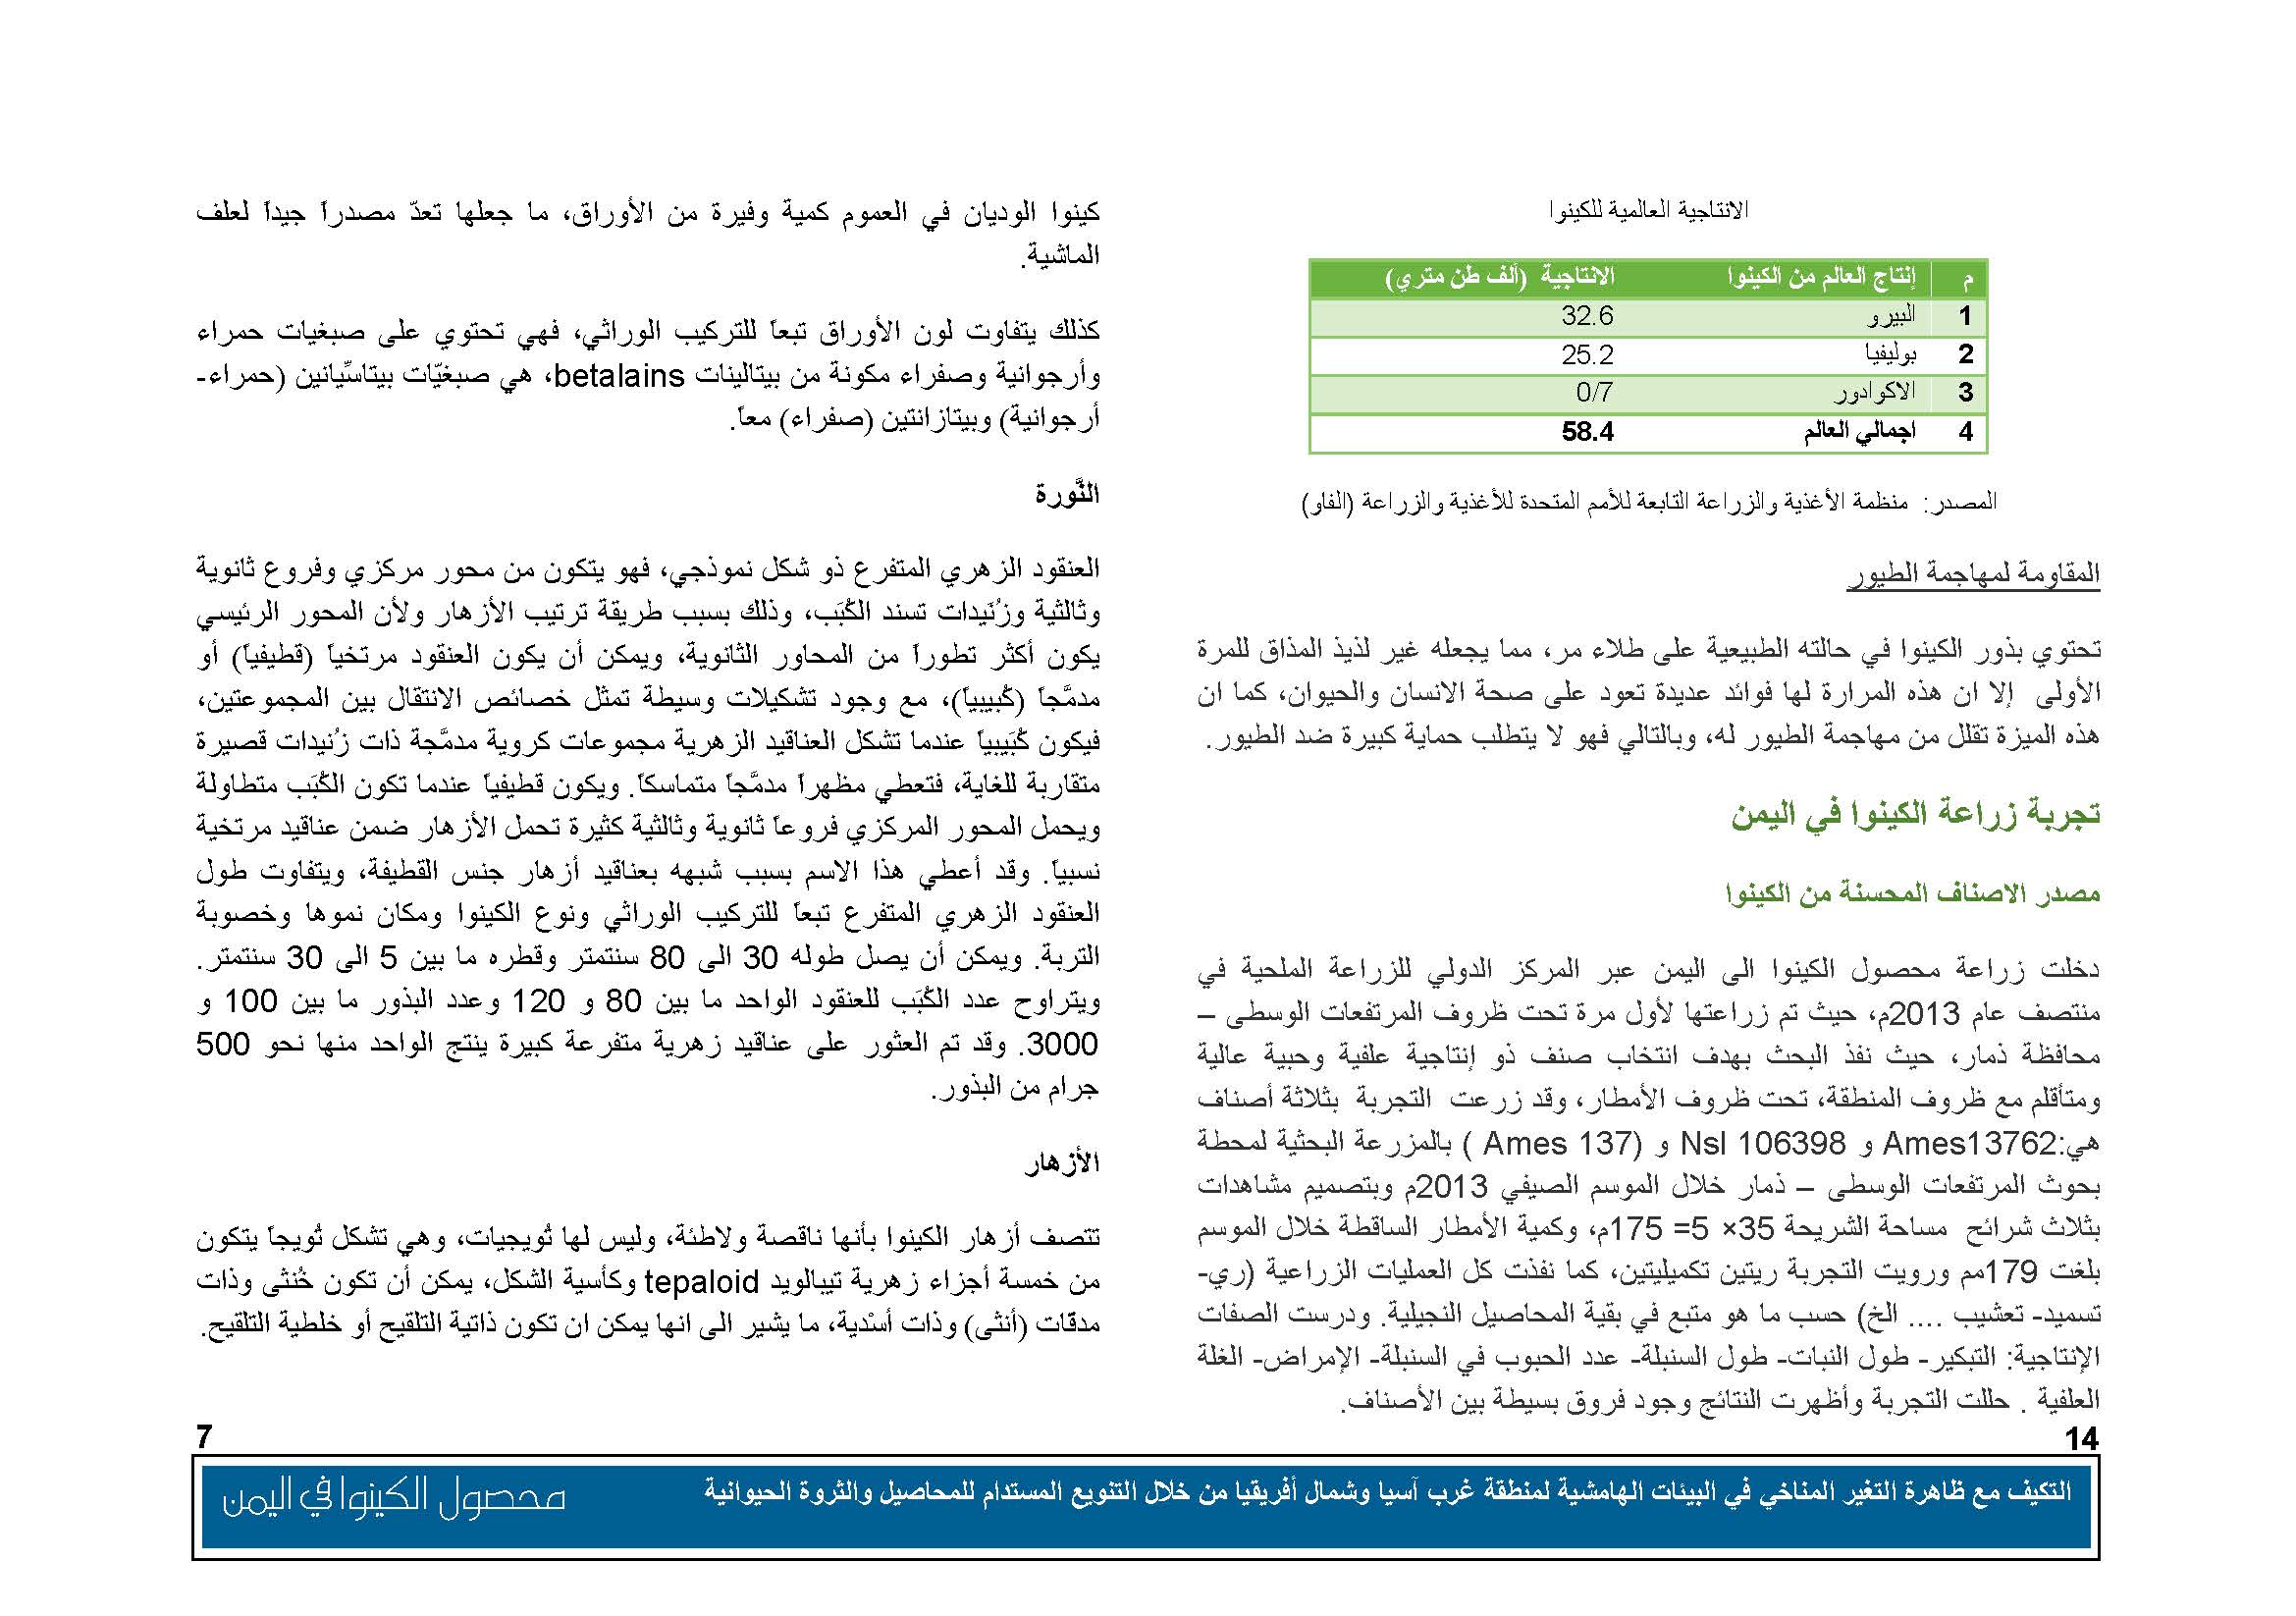 محصول الكينوا في اليمن (1)_Page_08